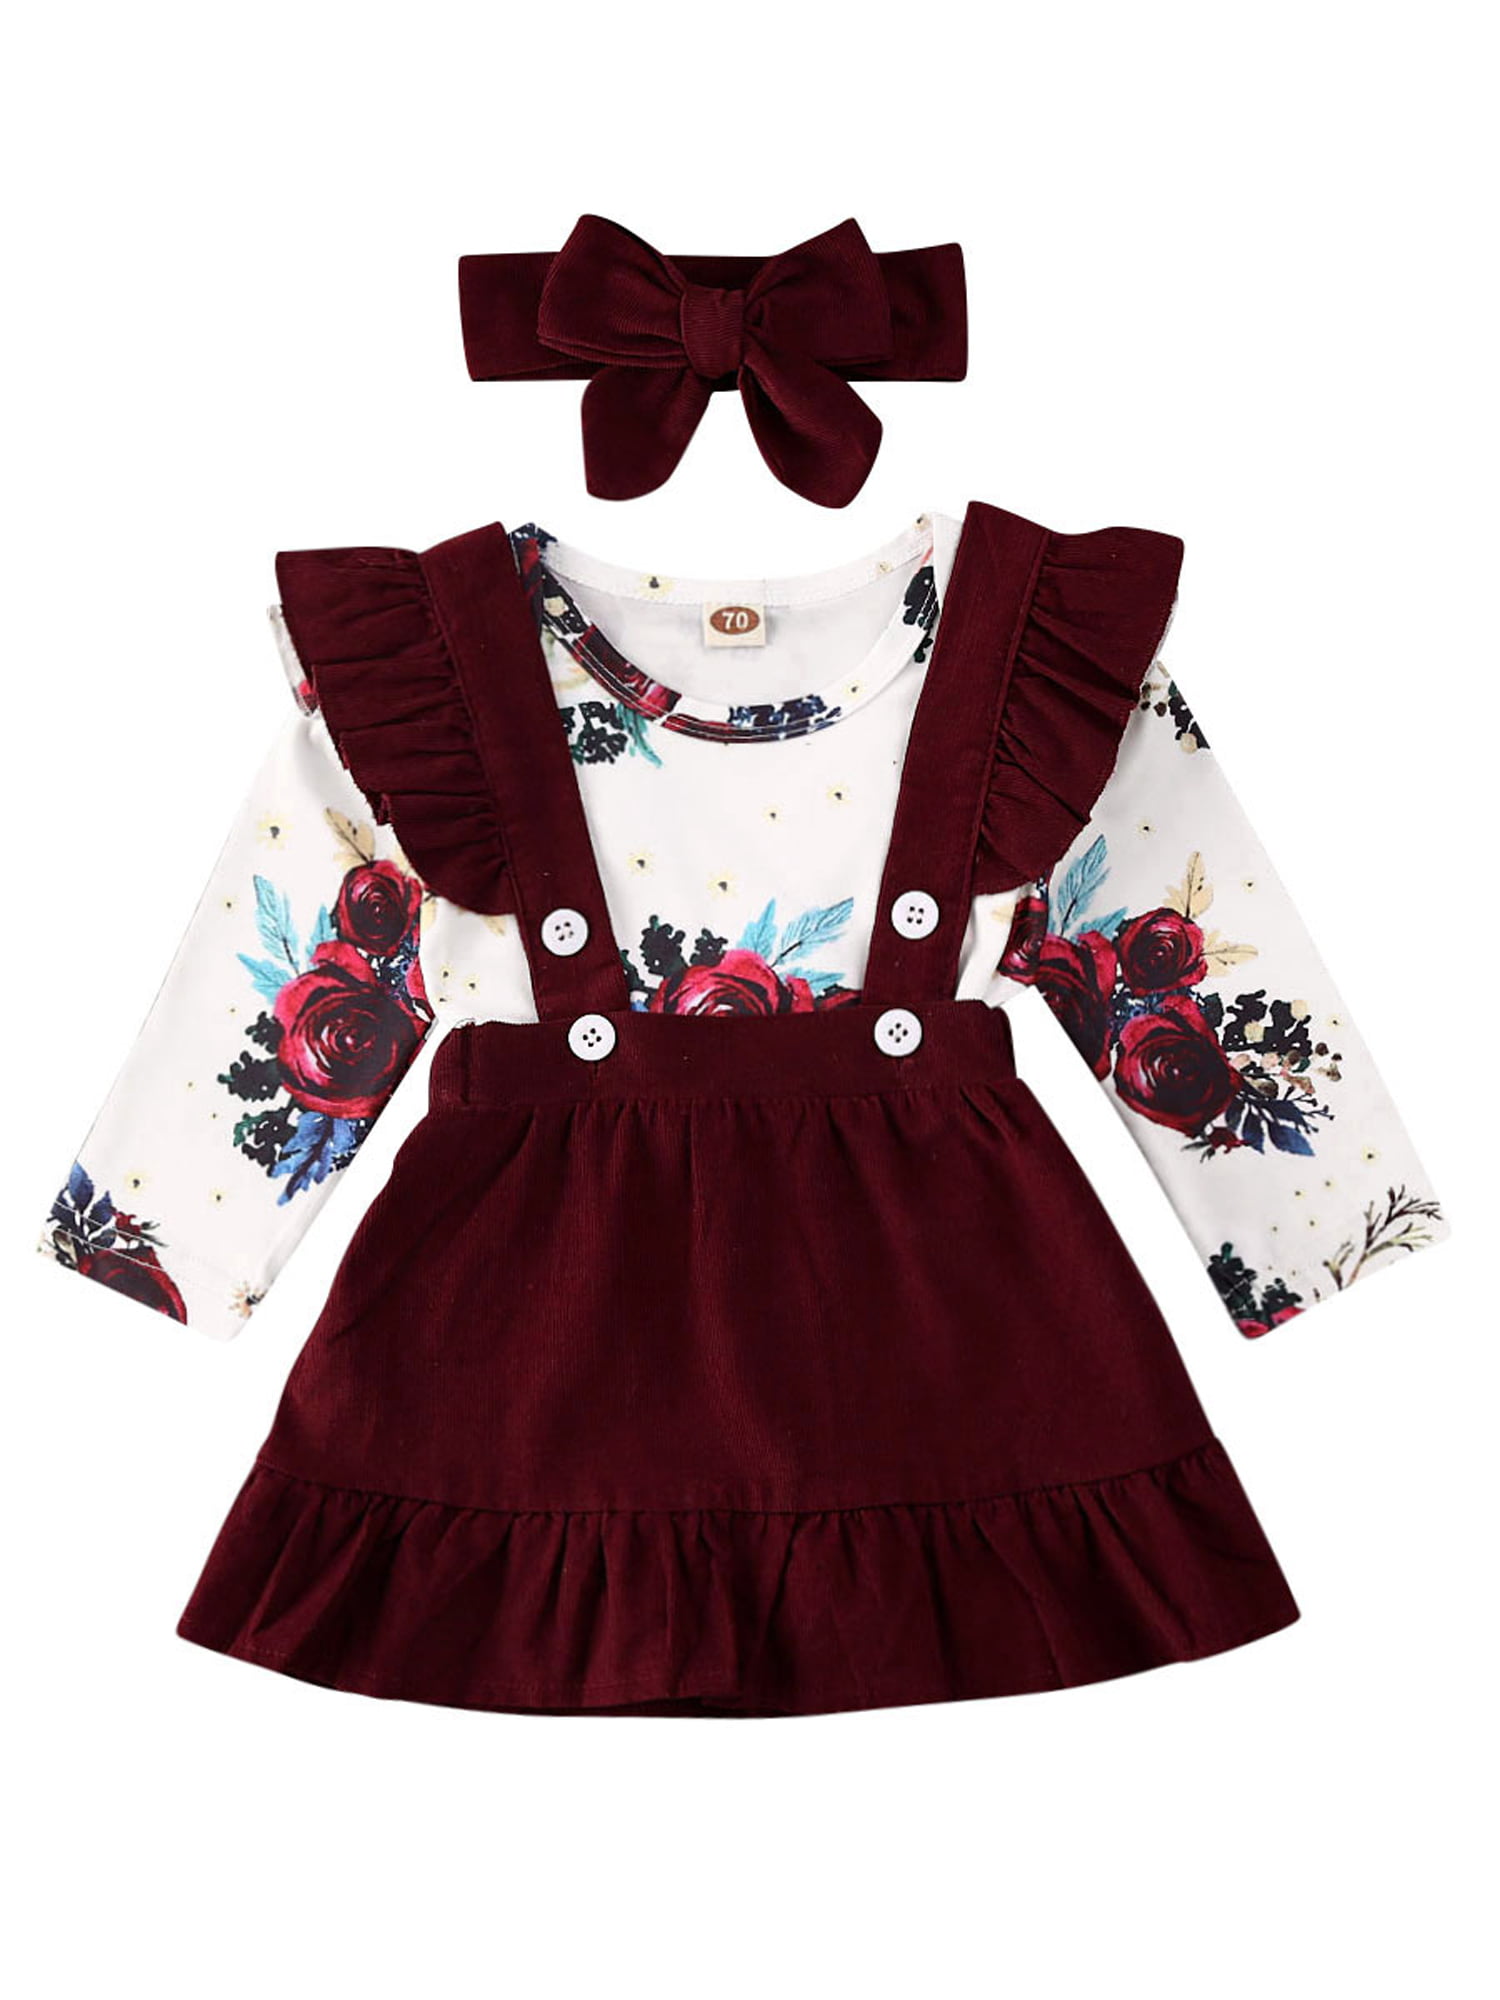 Baby Girls Suspender Skirt Sets,Newborn Long Sleeve Letter Romper Bodysuit Suspender Dress Headband Thanksgiving Outfits 